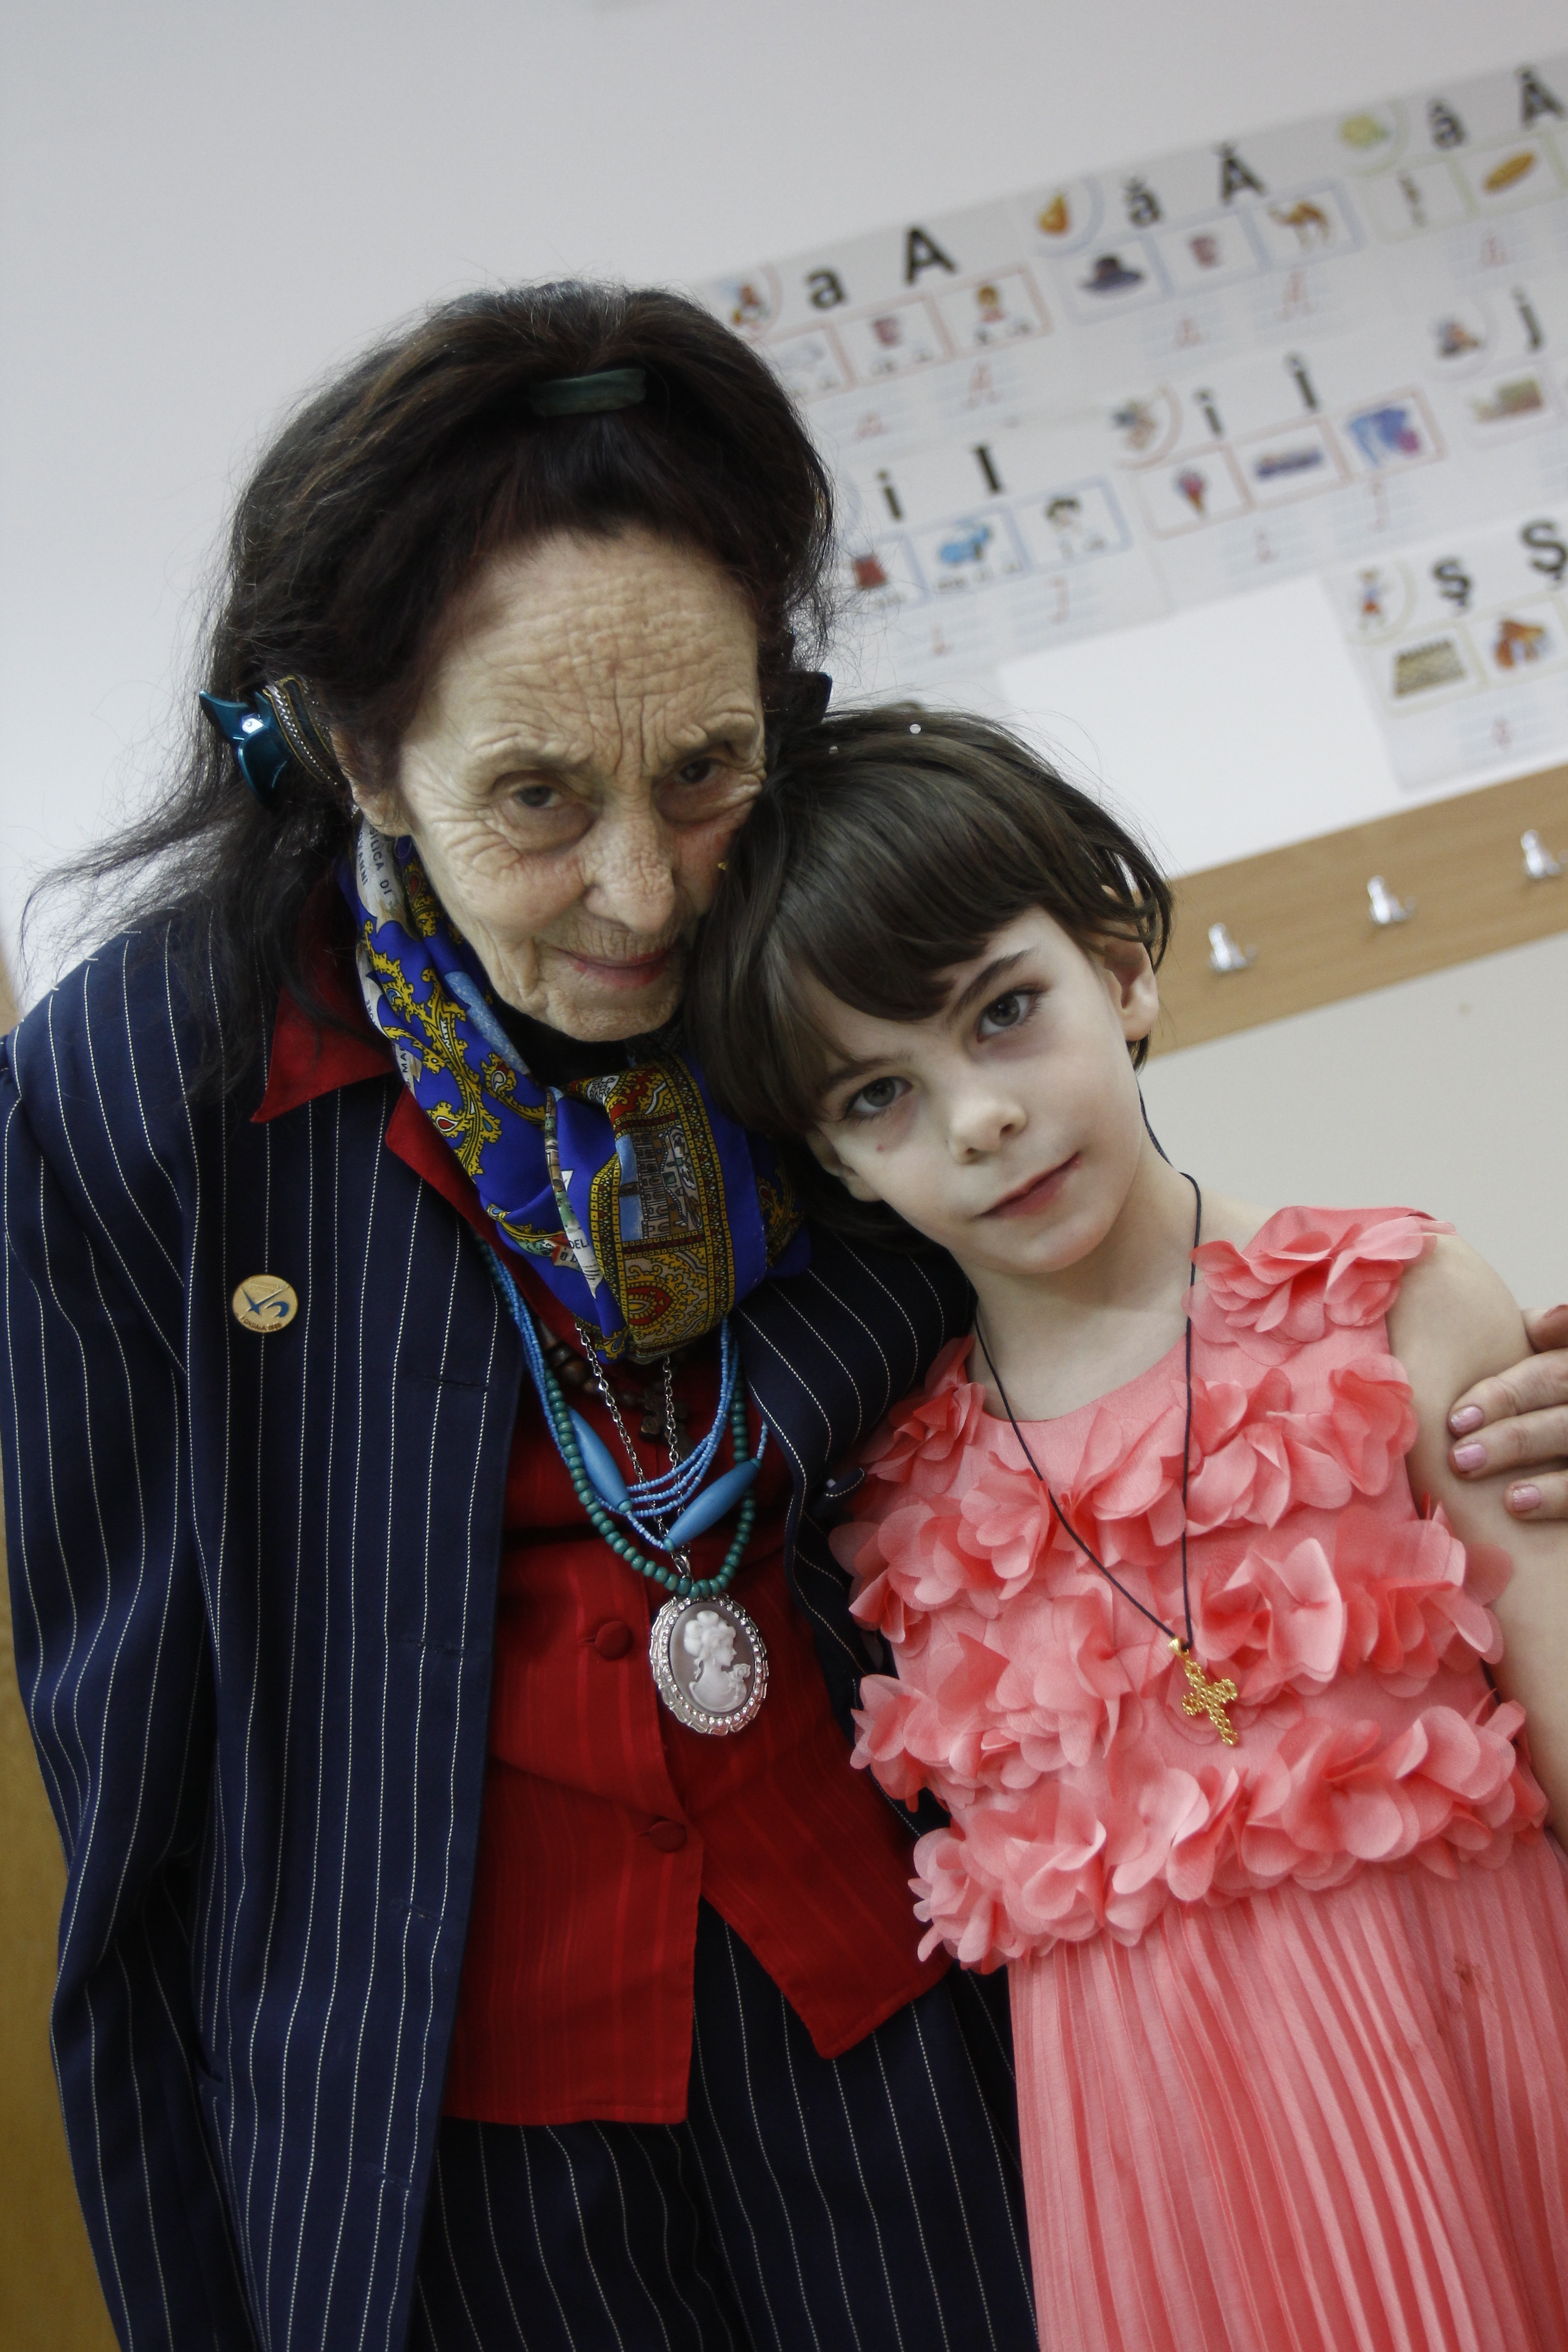 Adriana Iliescu a intrat in Cartea Recordurilor dupa ce a devenit mama la varsta de 67 de ani. Acum, fetita ei, Eliza, are 9 ani